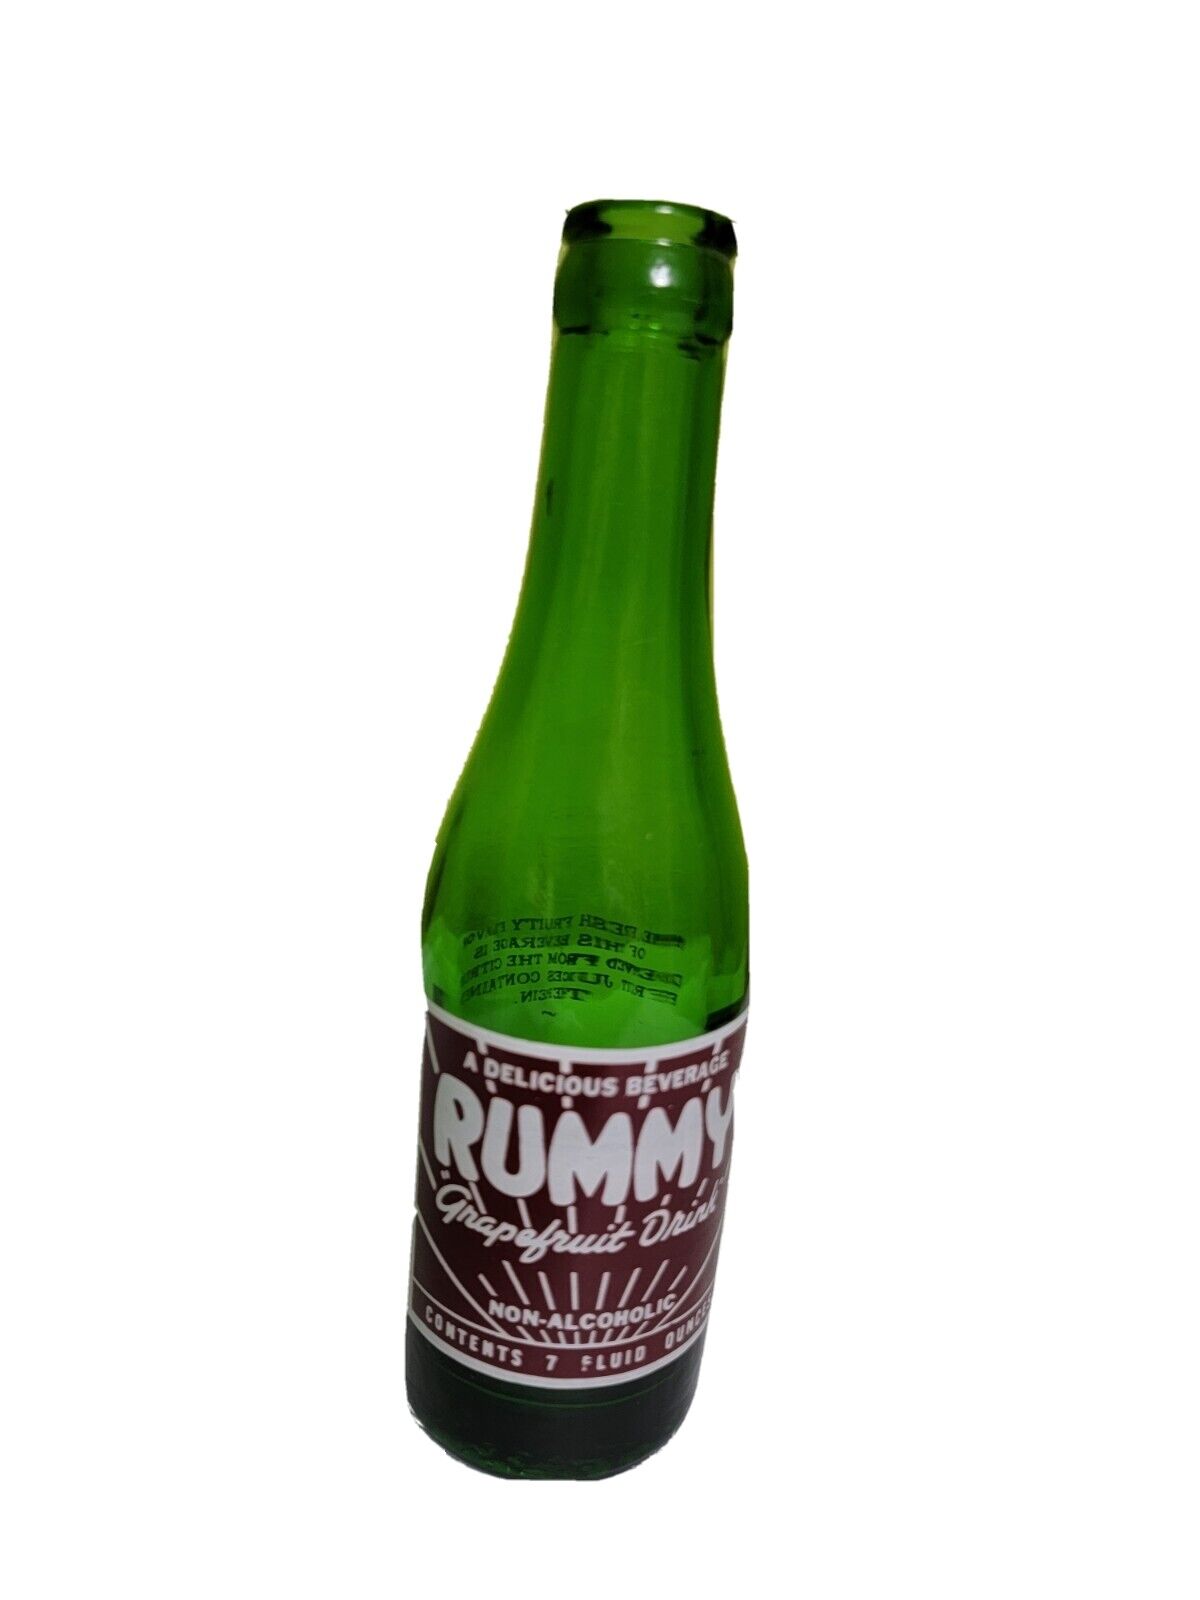 Rare Vintage Antique Soda Pop Glass Bottle Rummy Grapefruit Drink Beverage